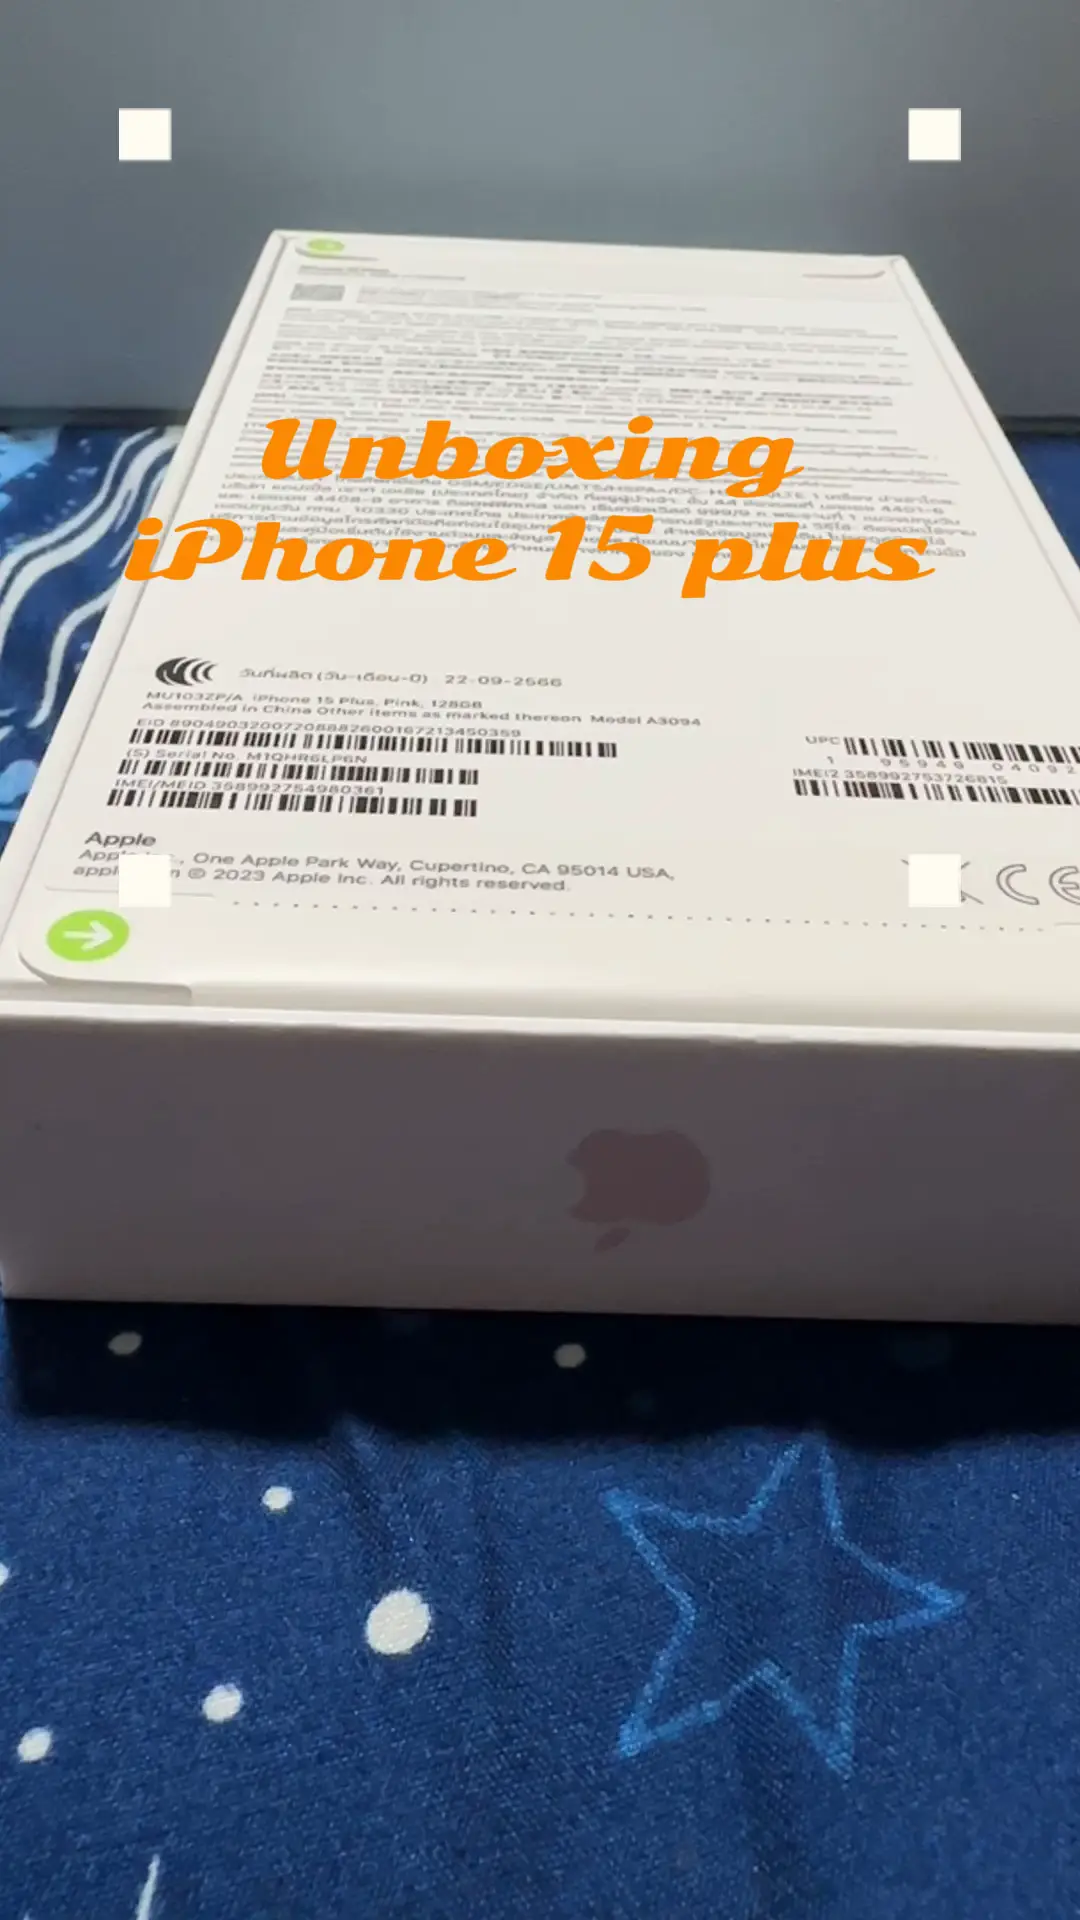 Apple iPhone 15 Plus UNBOXING